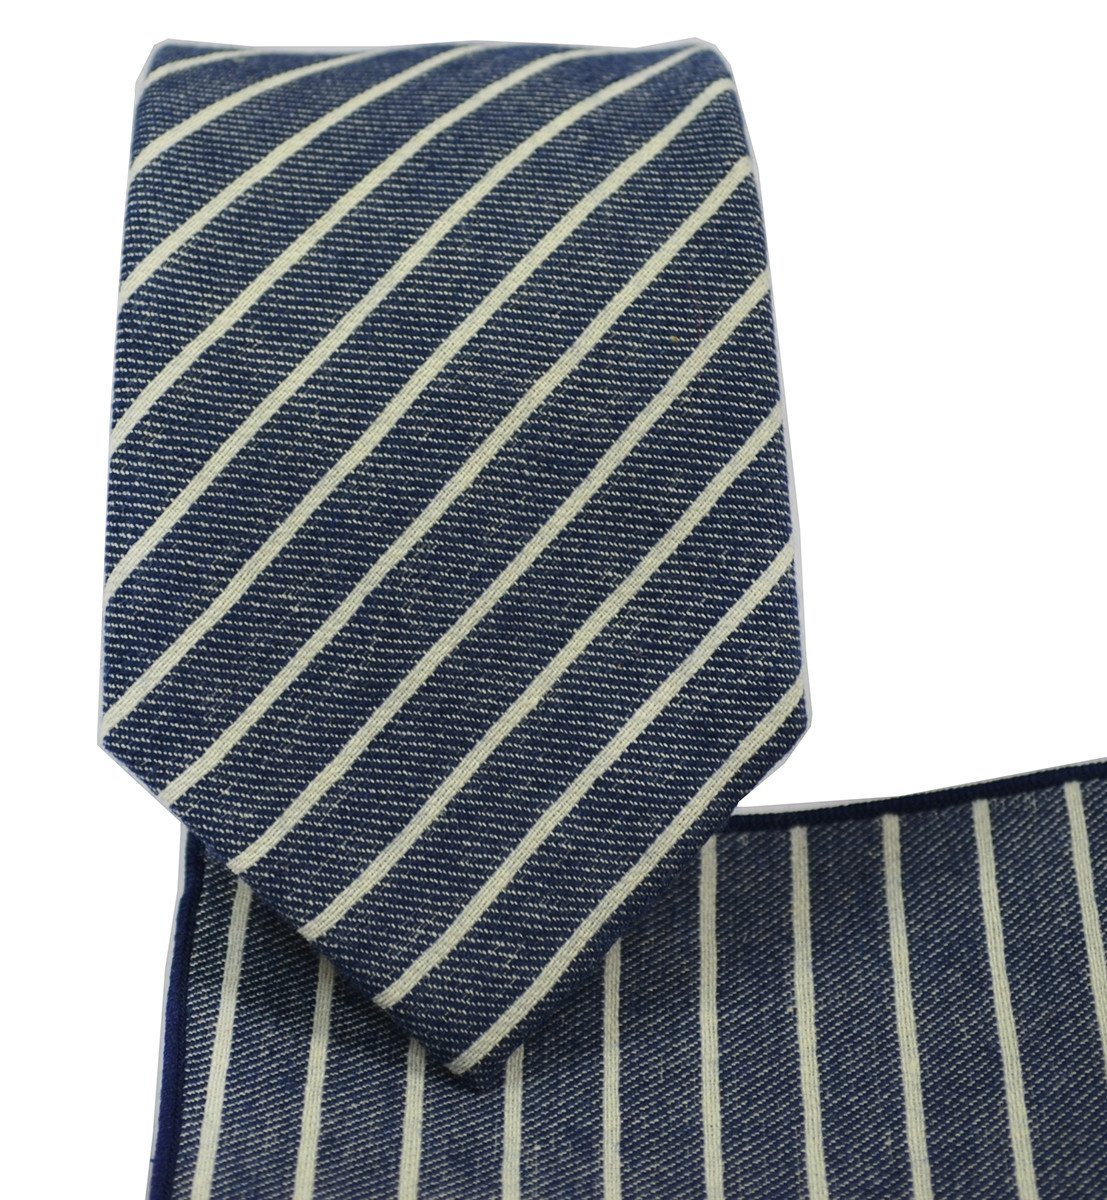 Blue Striped Linen Tie Set by Paul Malone | Paul Malone